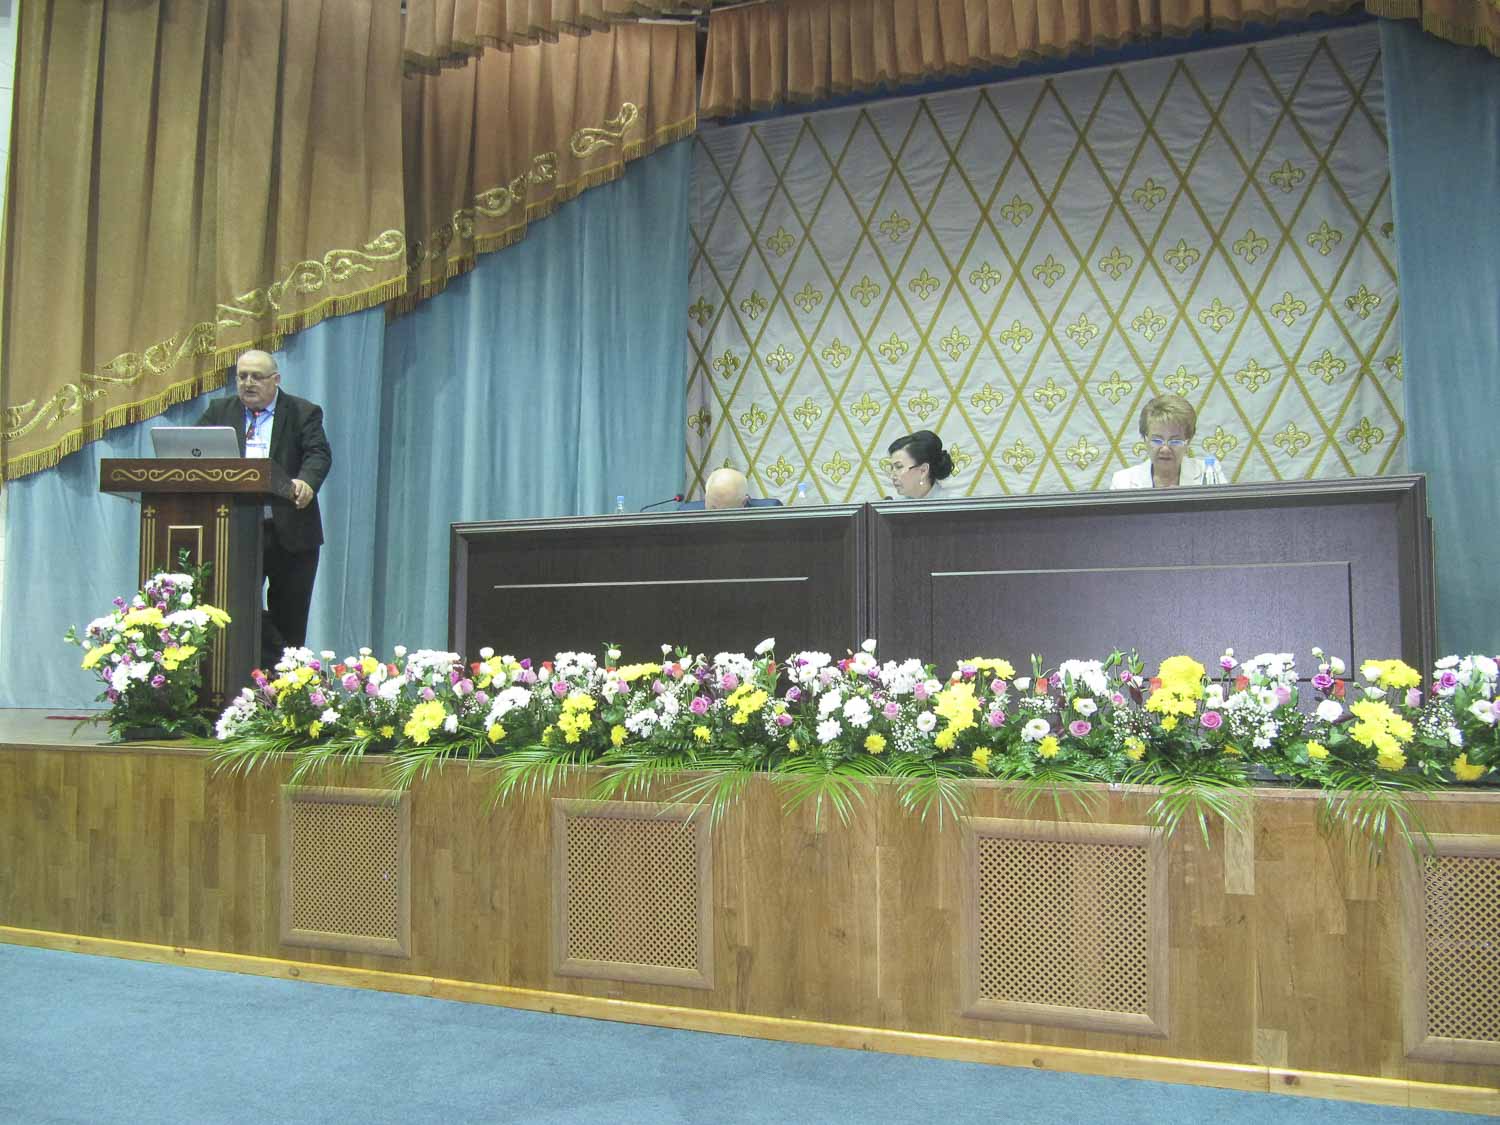 Мининский университет принял участие в международном форуме ЕАПУ в Казахстане